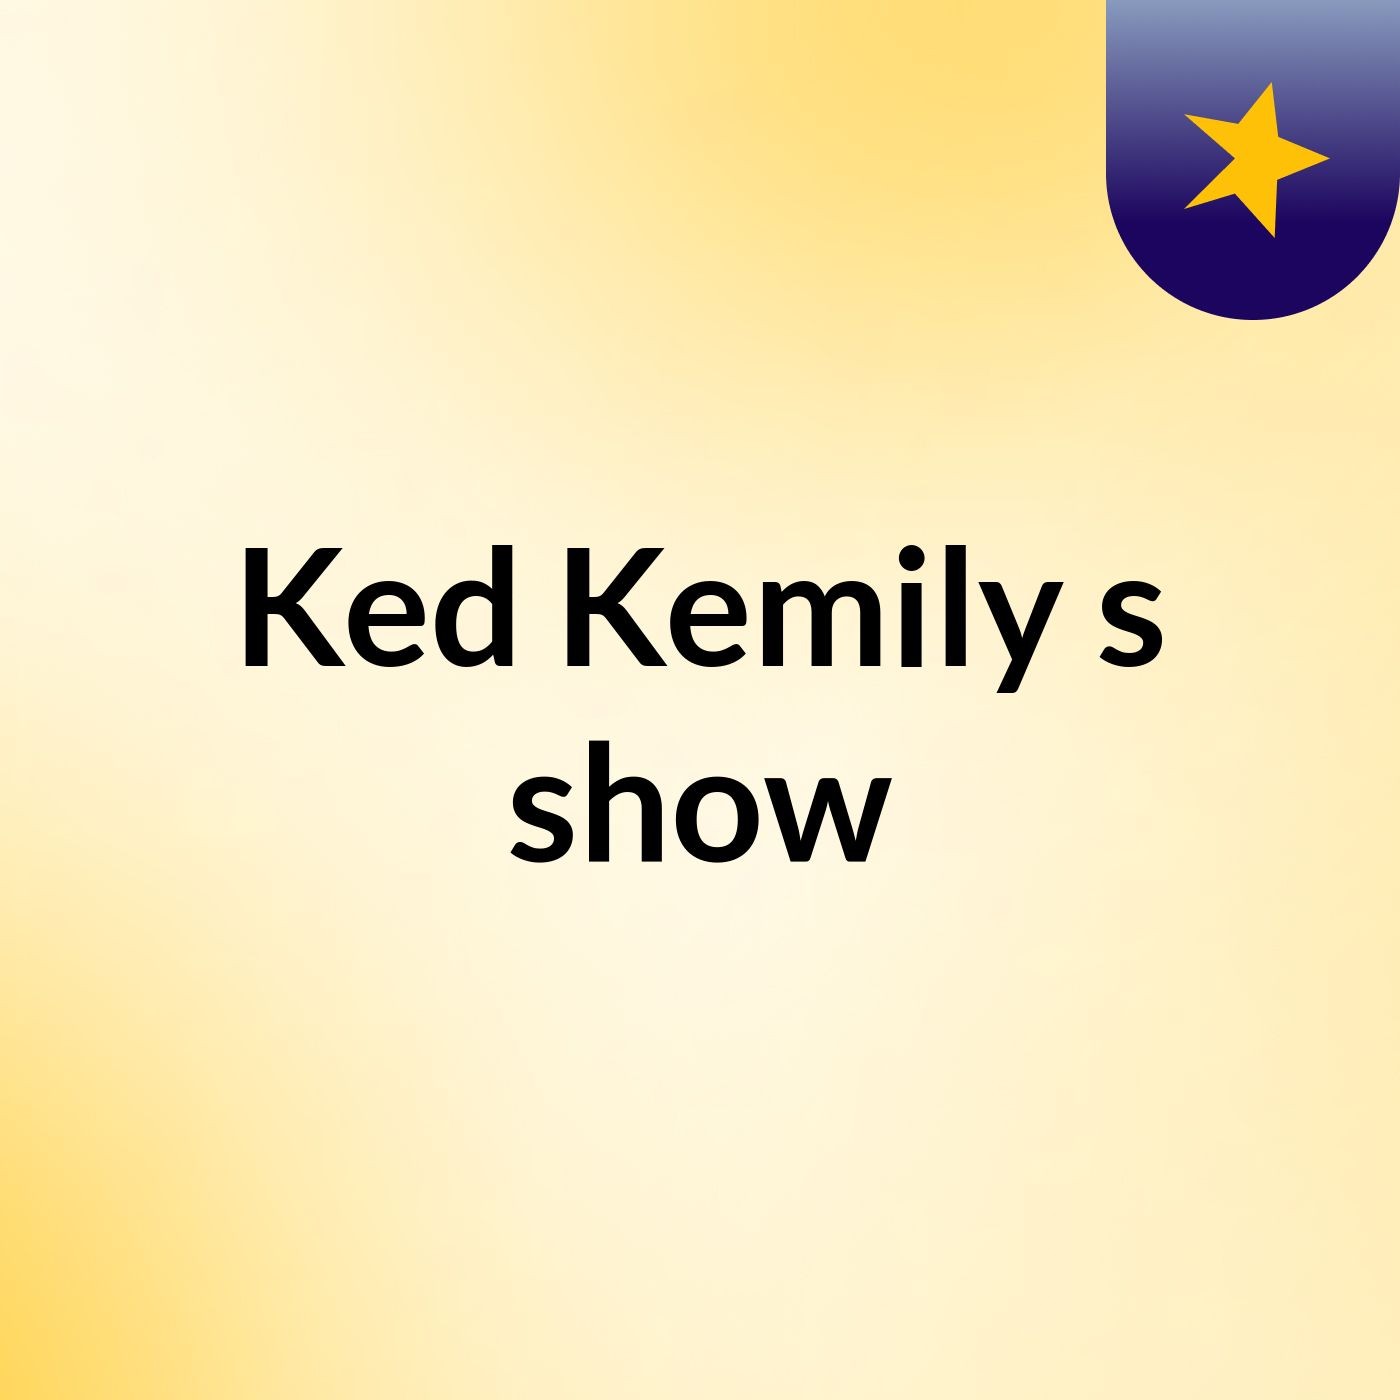 Ked Kemily's show